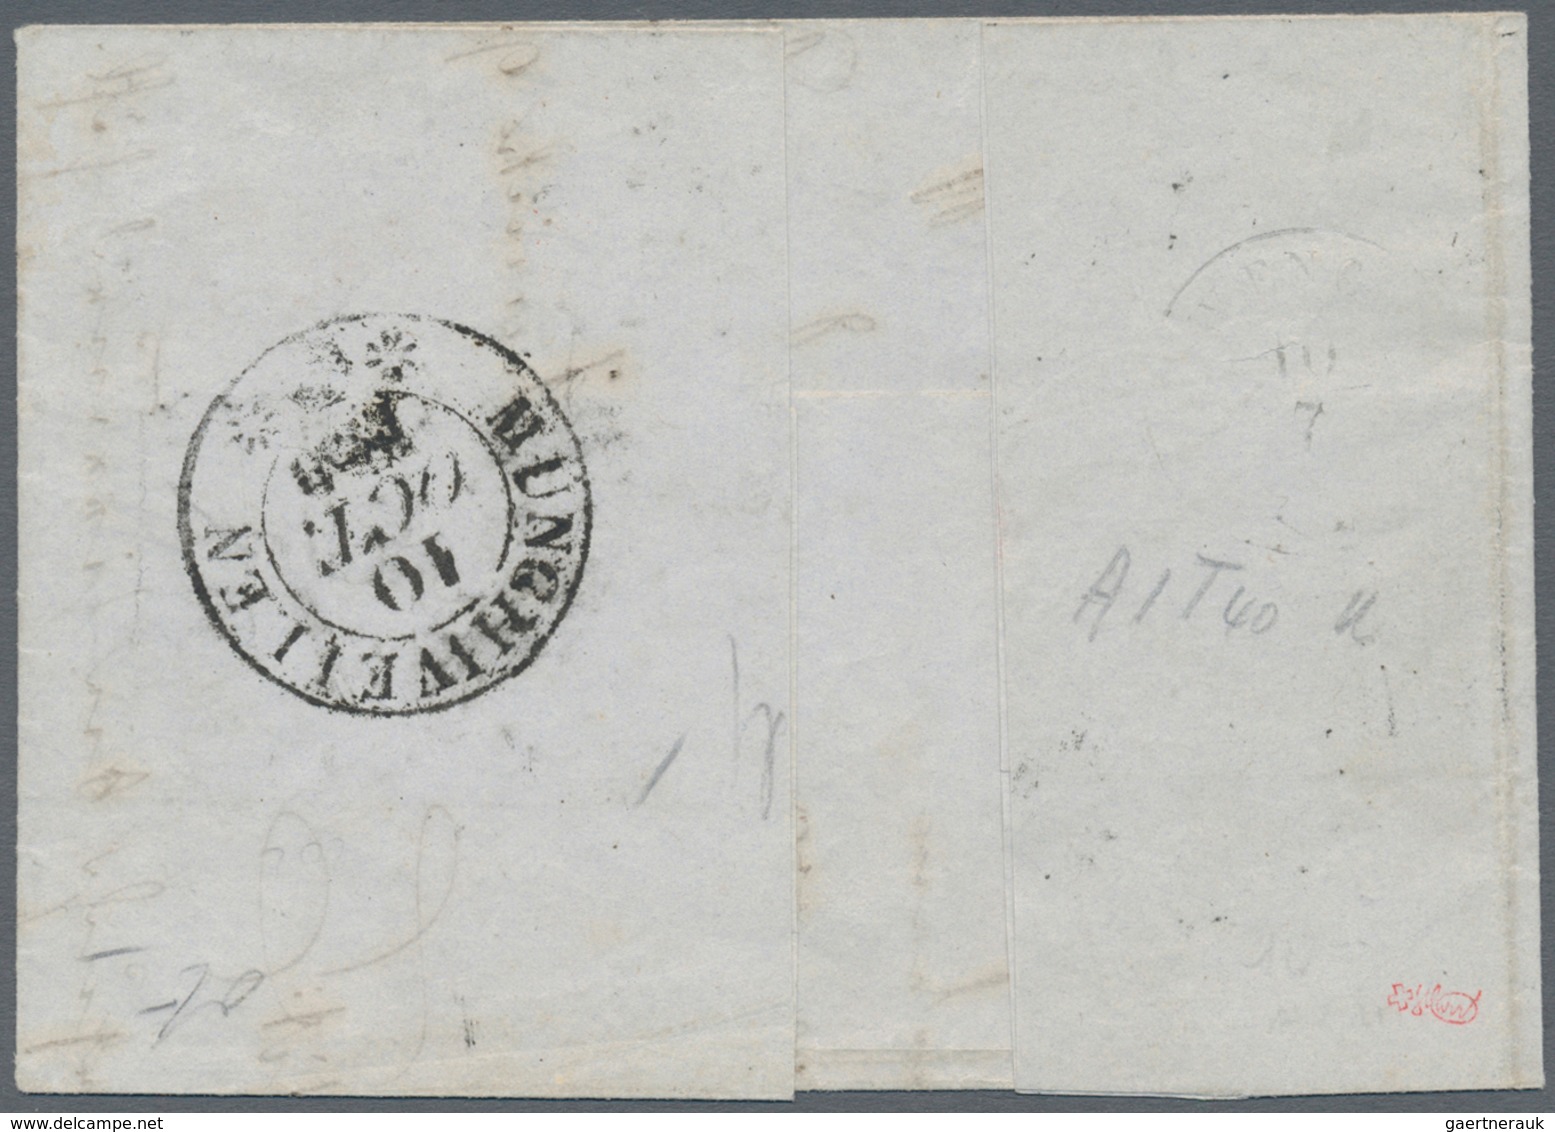 01623 Schweiz: 1850 Rayon II 10 Rp. Schwarz/rot/gelbocker, Sogenannte "Tabakbraun", Type 40 Vom Stein A1-U - Unused Stamps